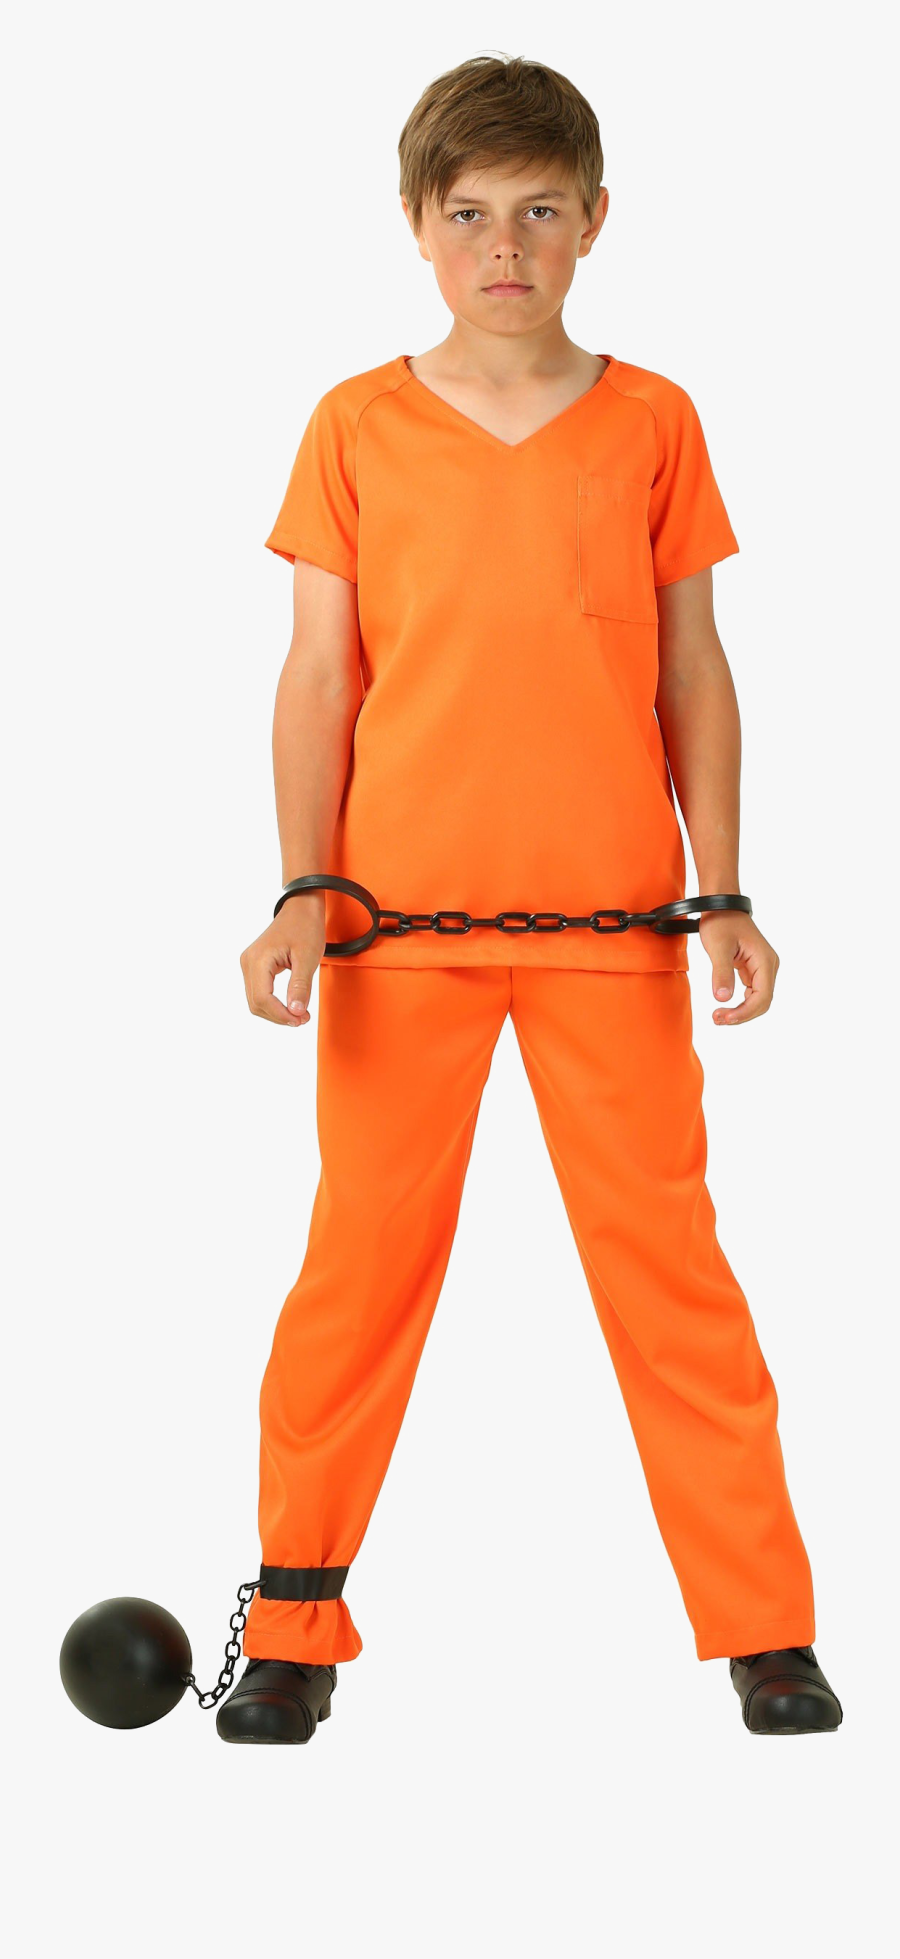 Orange Costume Prisoner Transparent - Prisoner Transparent, Transparent Clipart